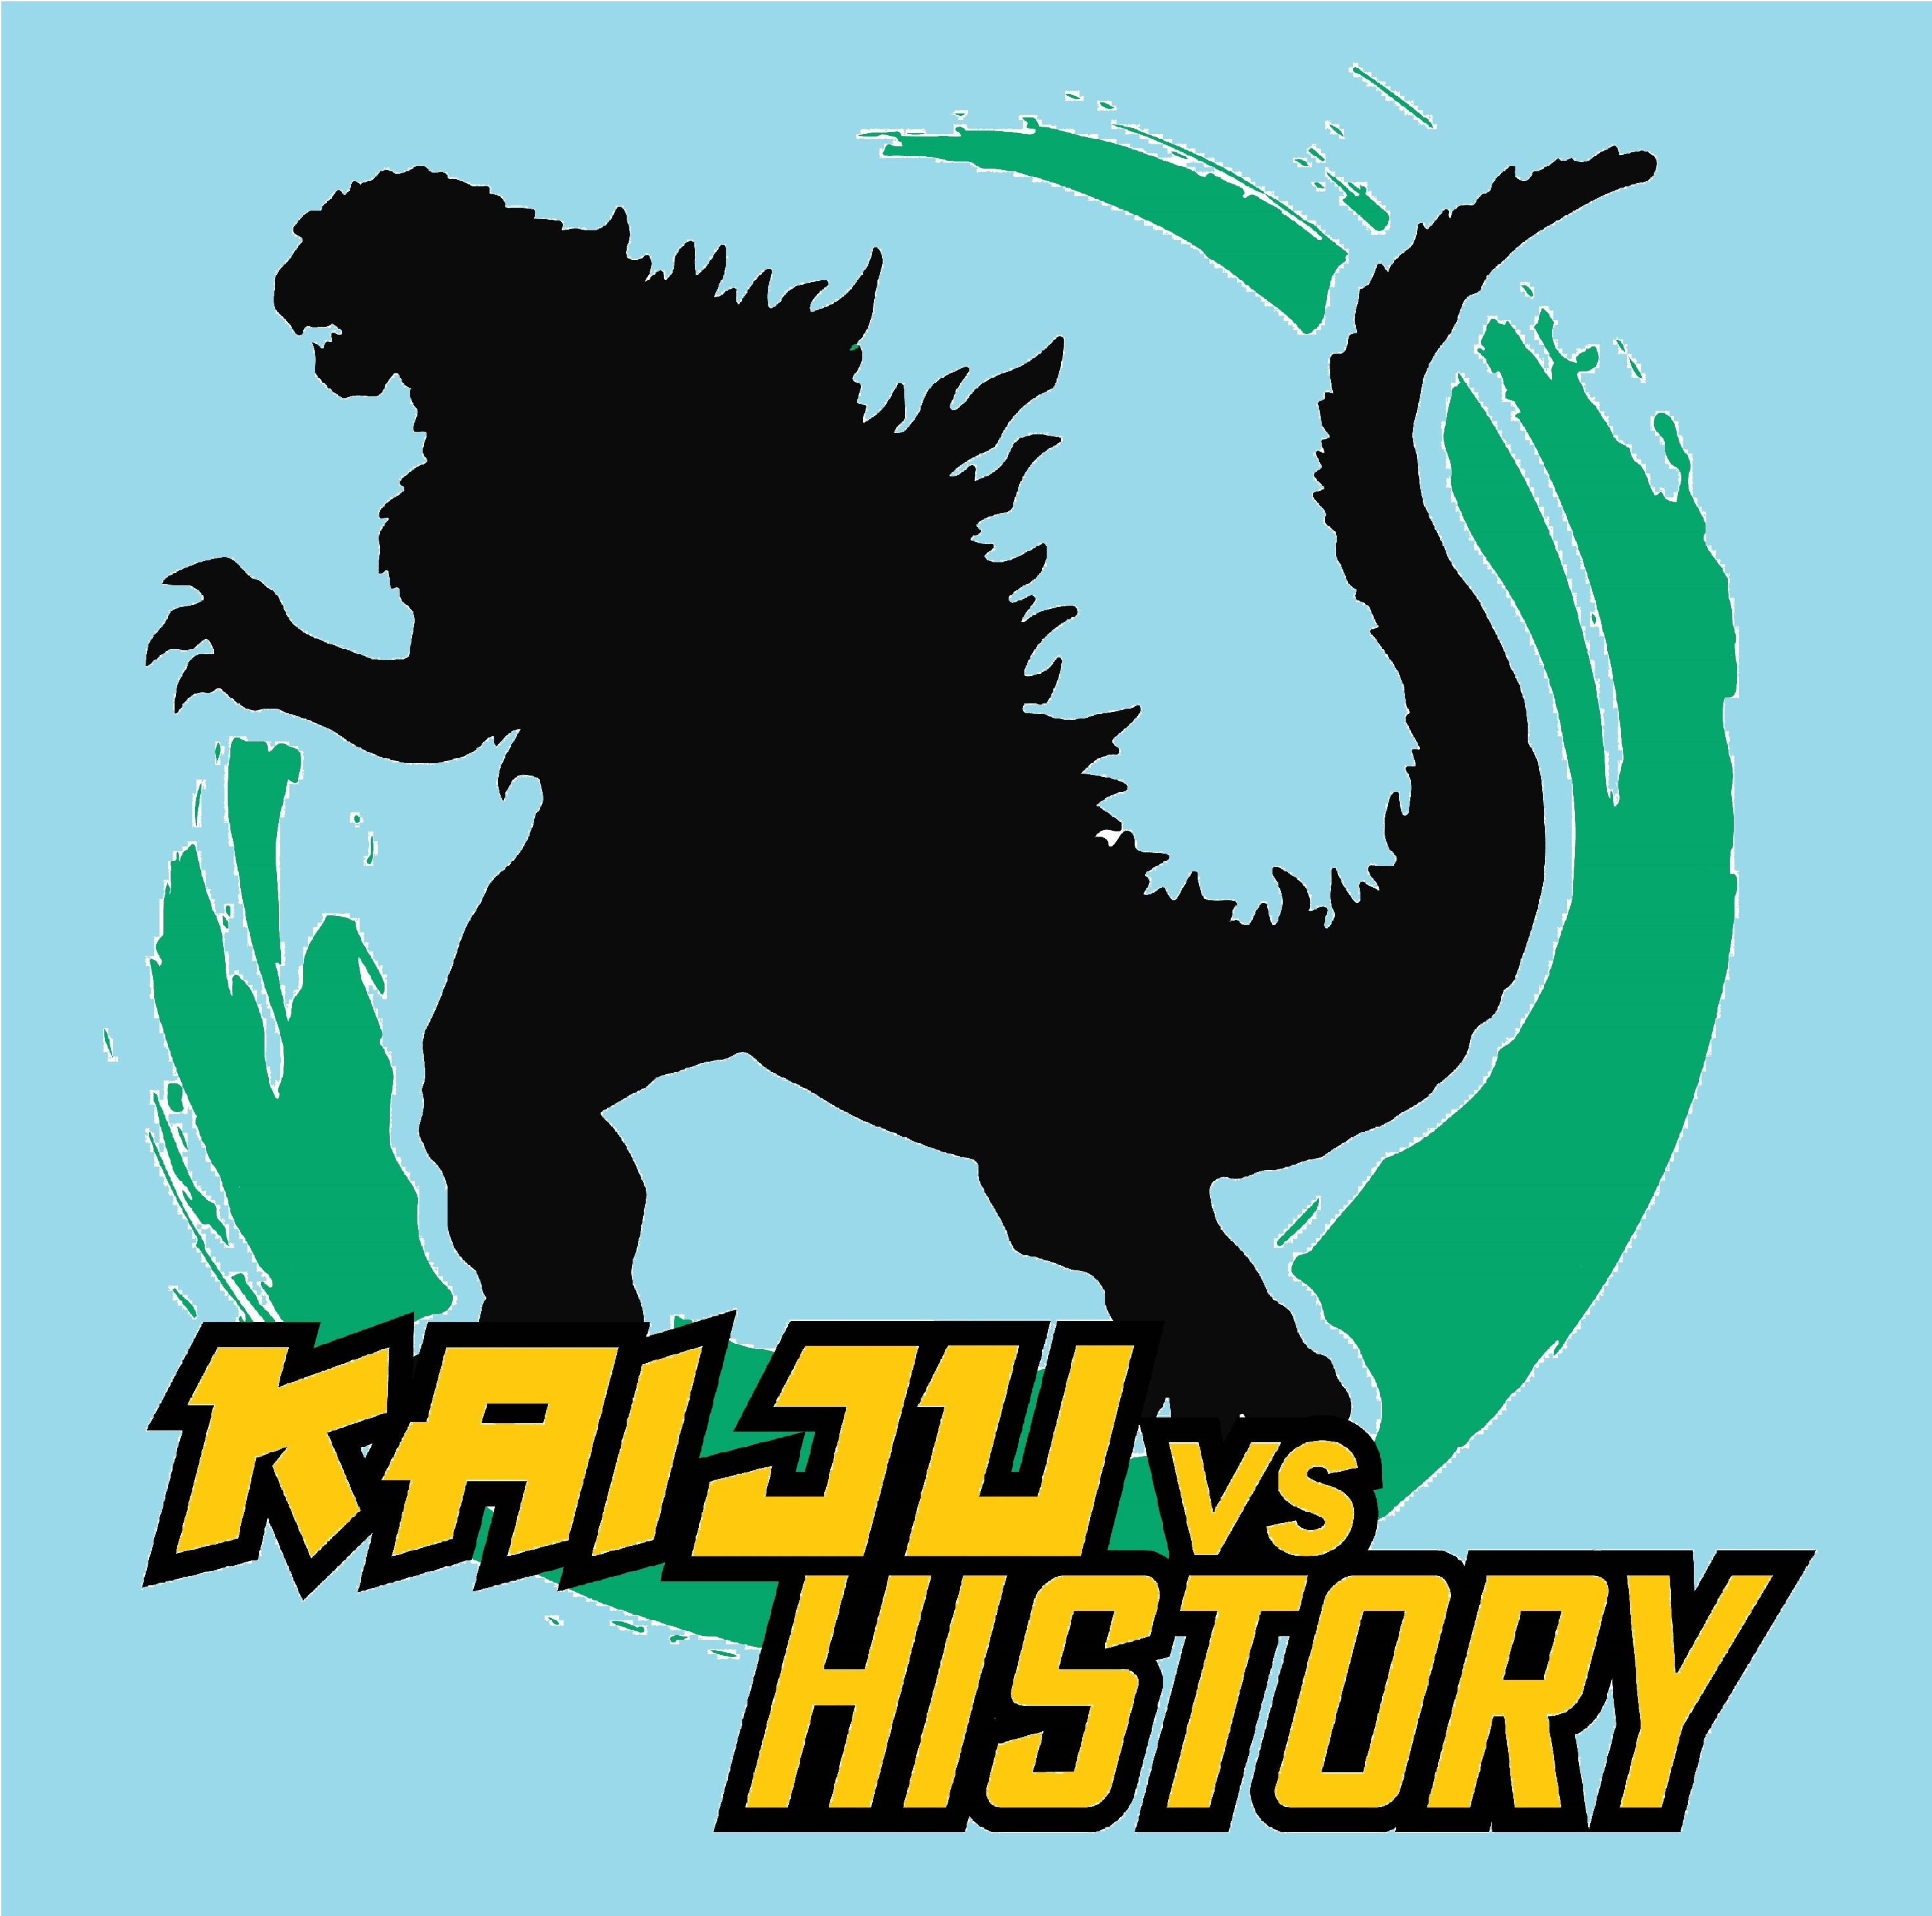 Episode 1 - An Introduction to Kaiju